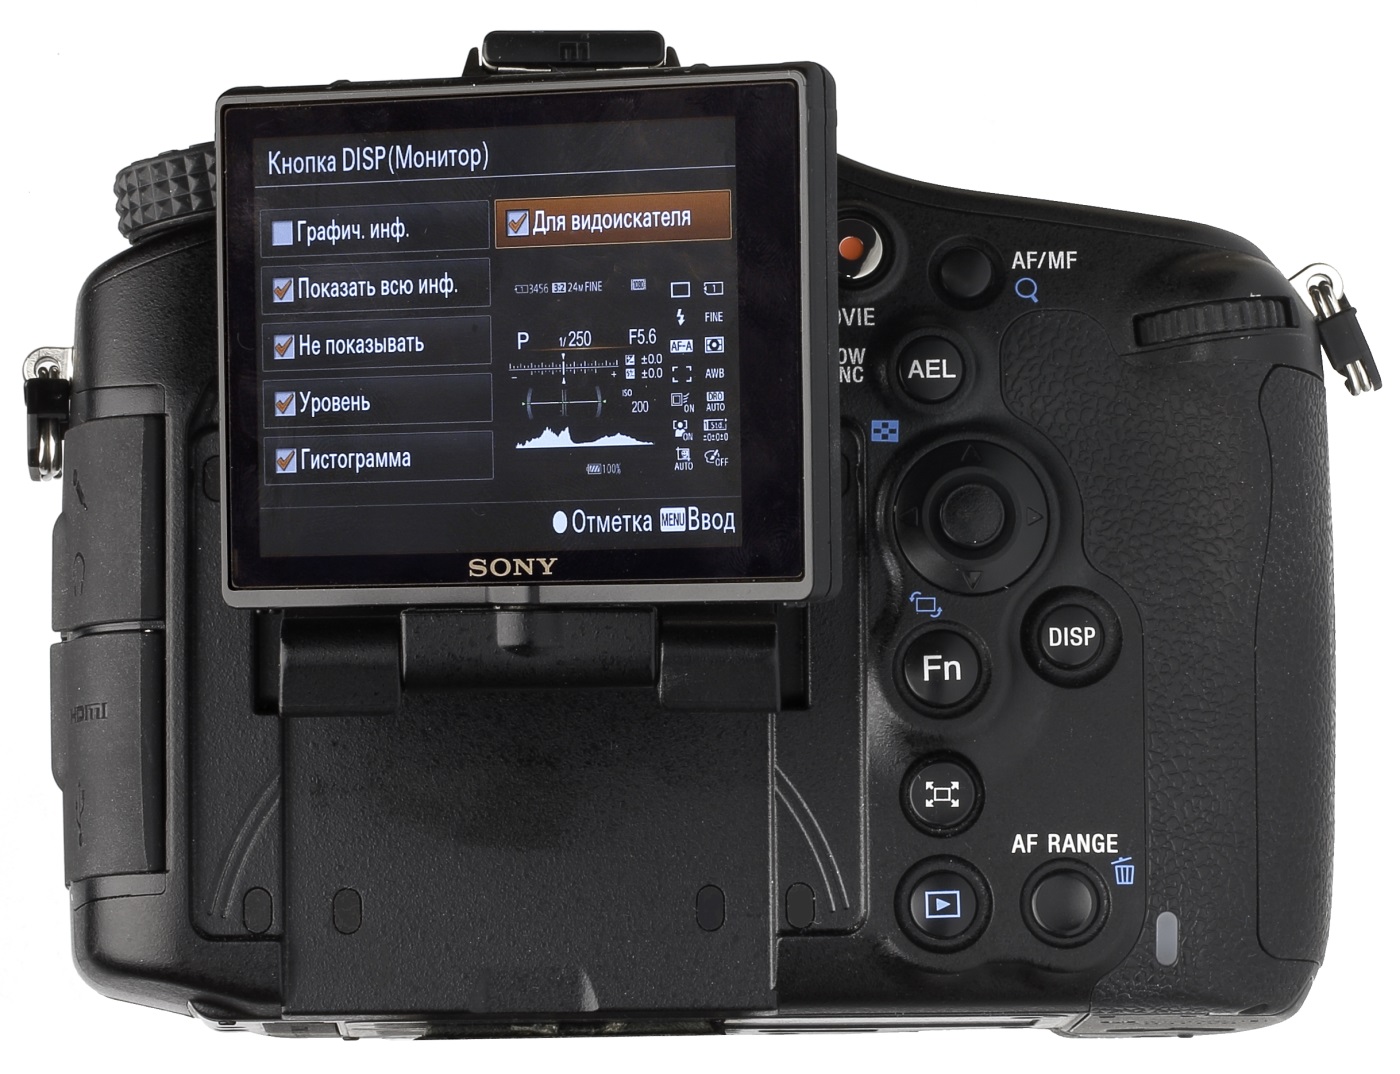 Тест зеркальный фотокамеры Sony SLT-A88 - дисплей